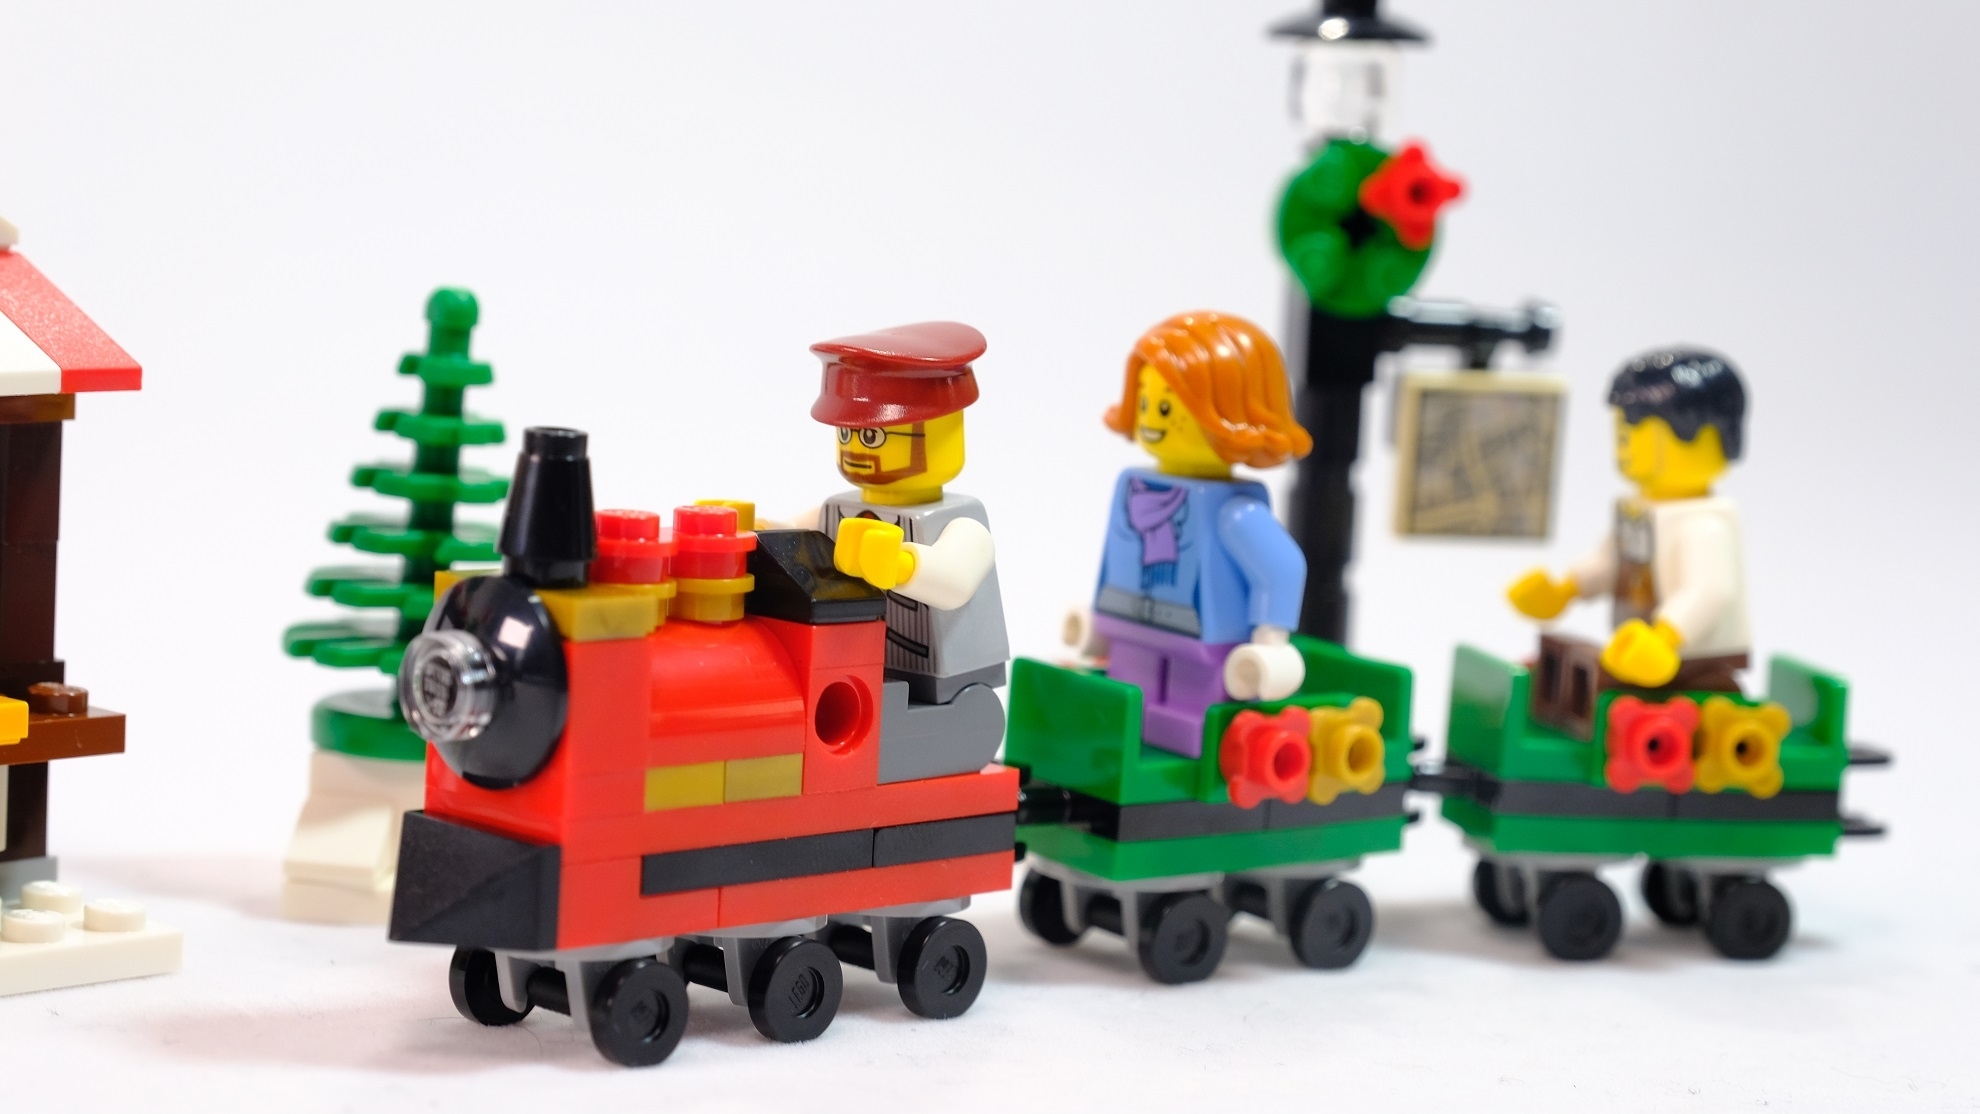 乐高搭建:乐高节日系列40262圣诞集市小火车,可爱又讨巧